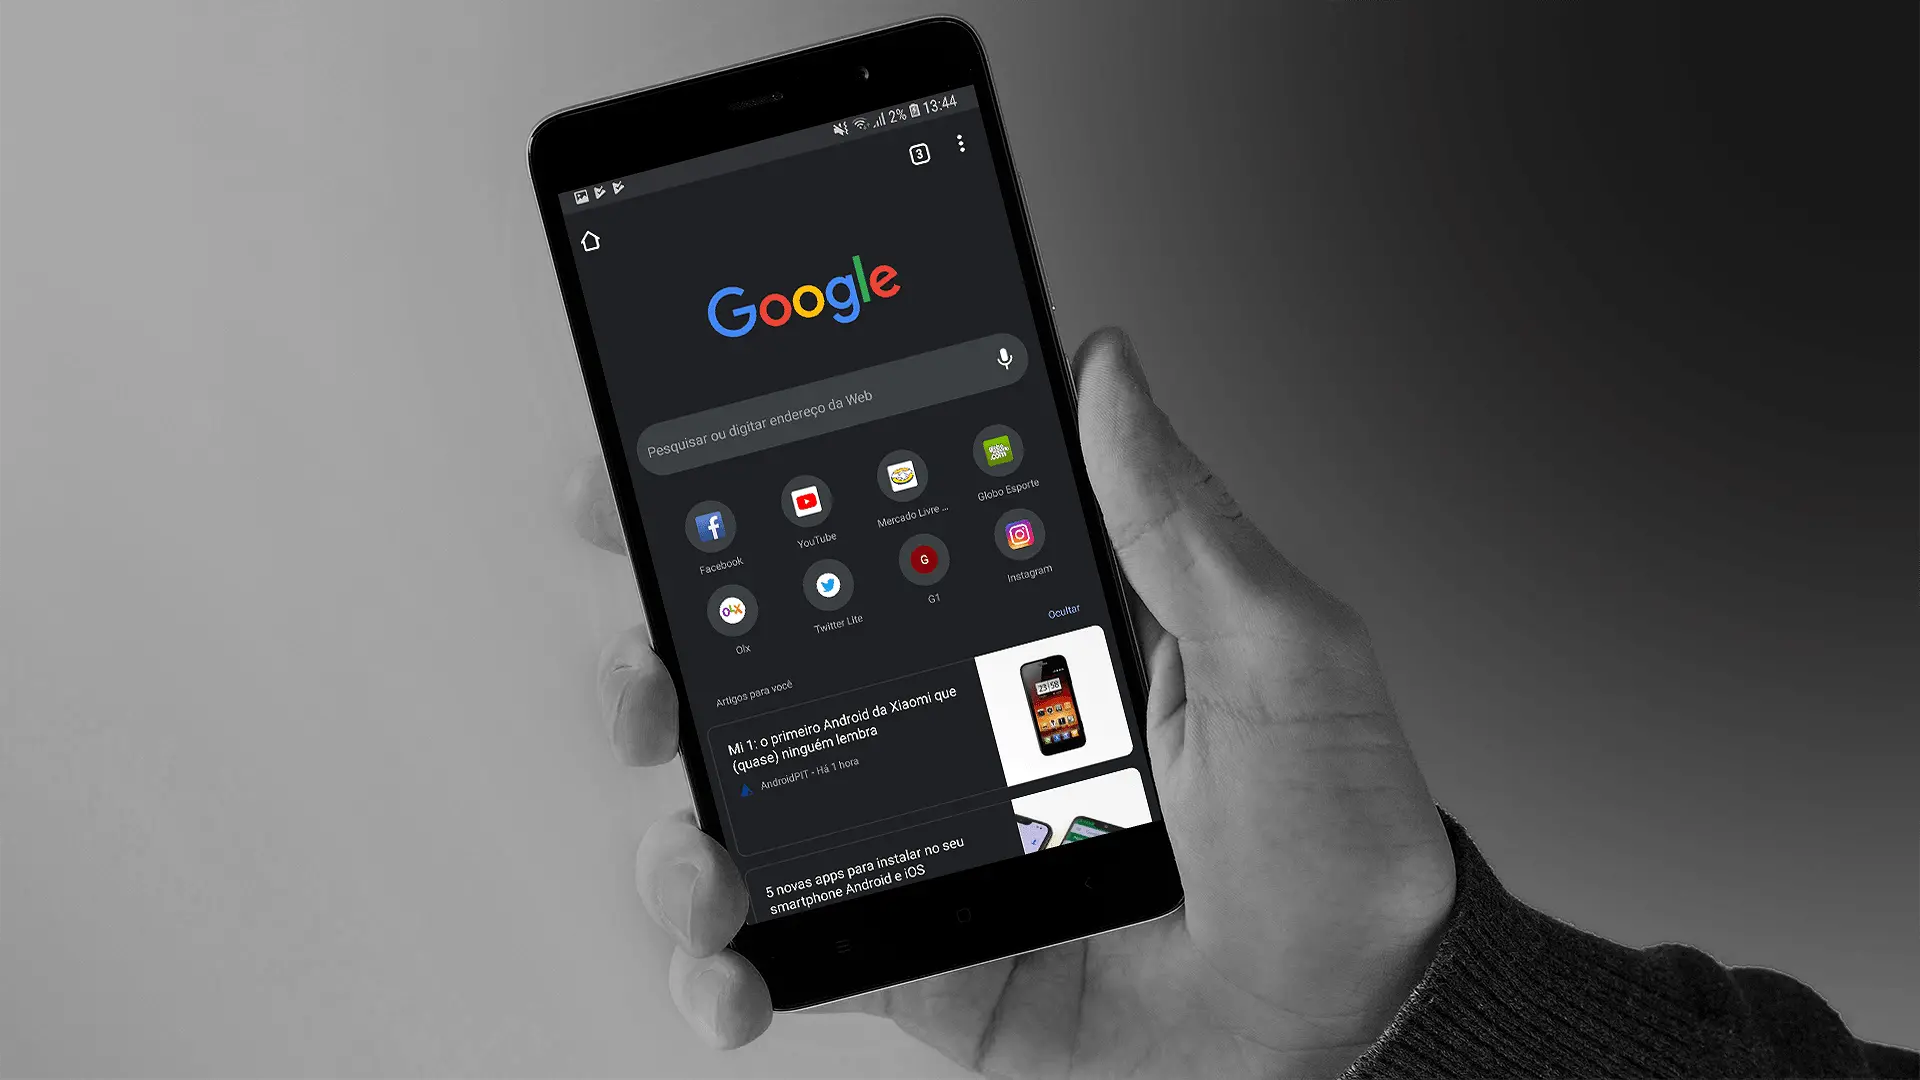 Mode Gelap Hadir di Google Chrome Android Begini Mengaktifkannya